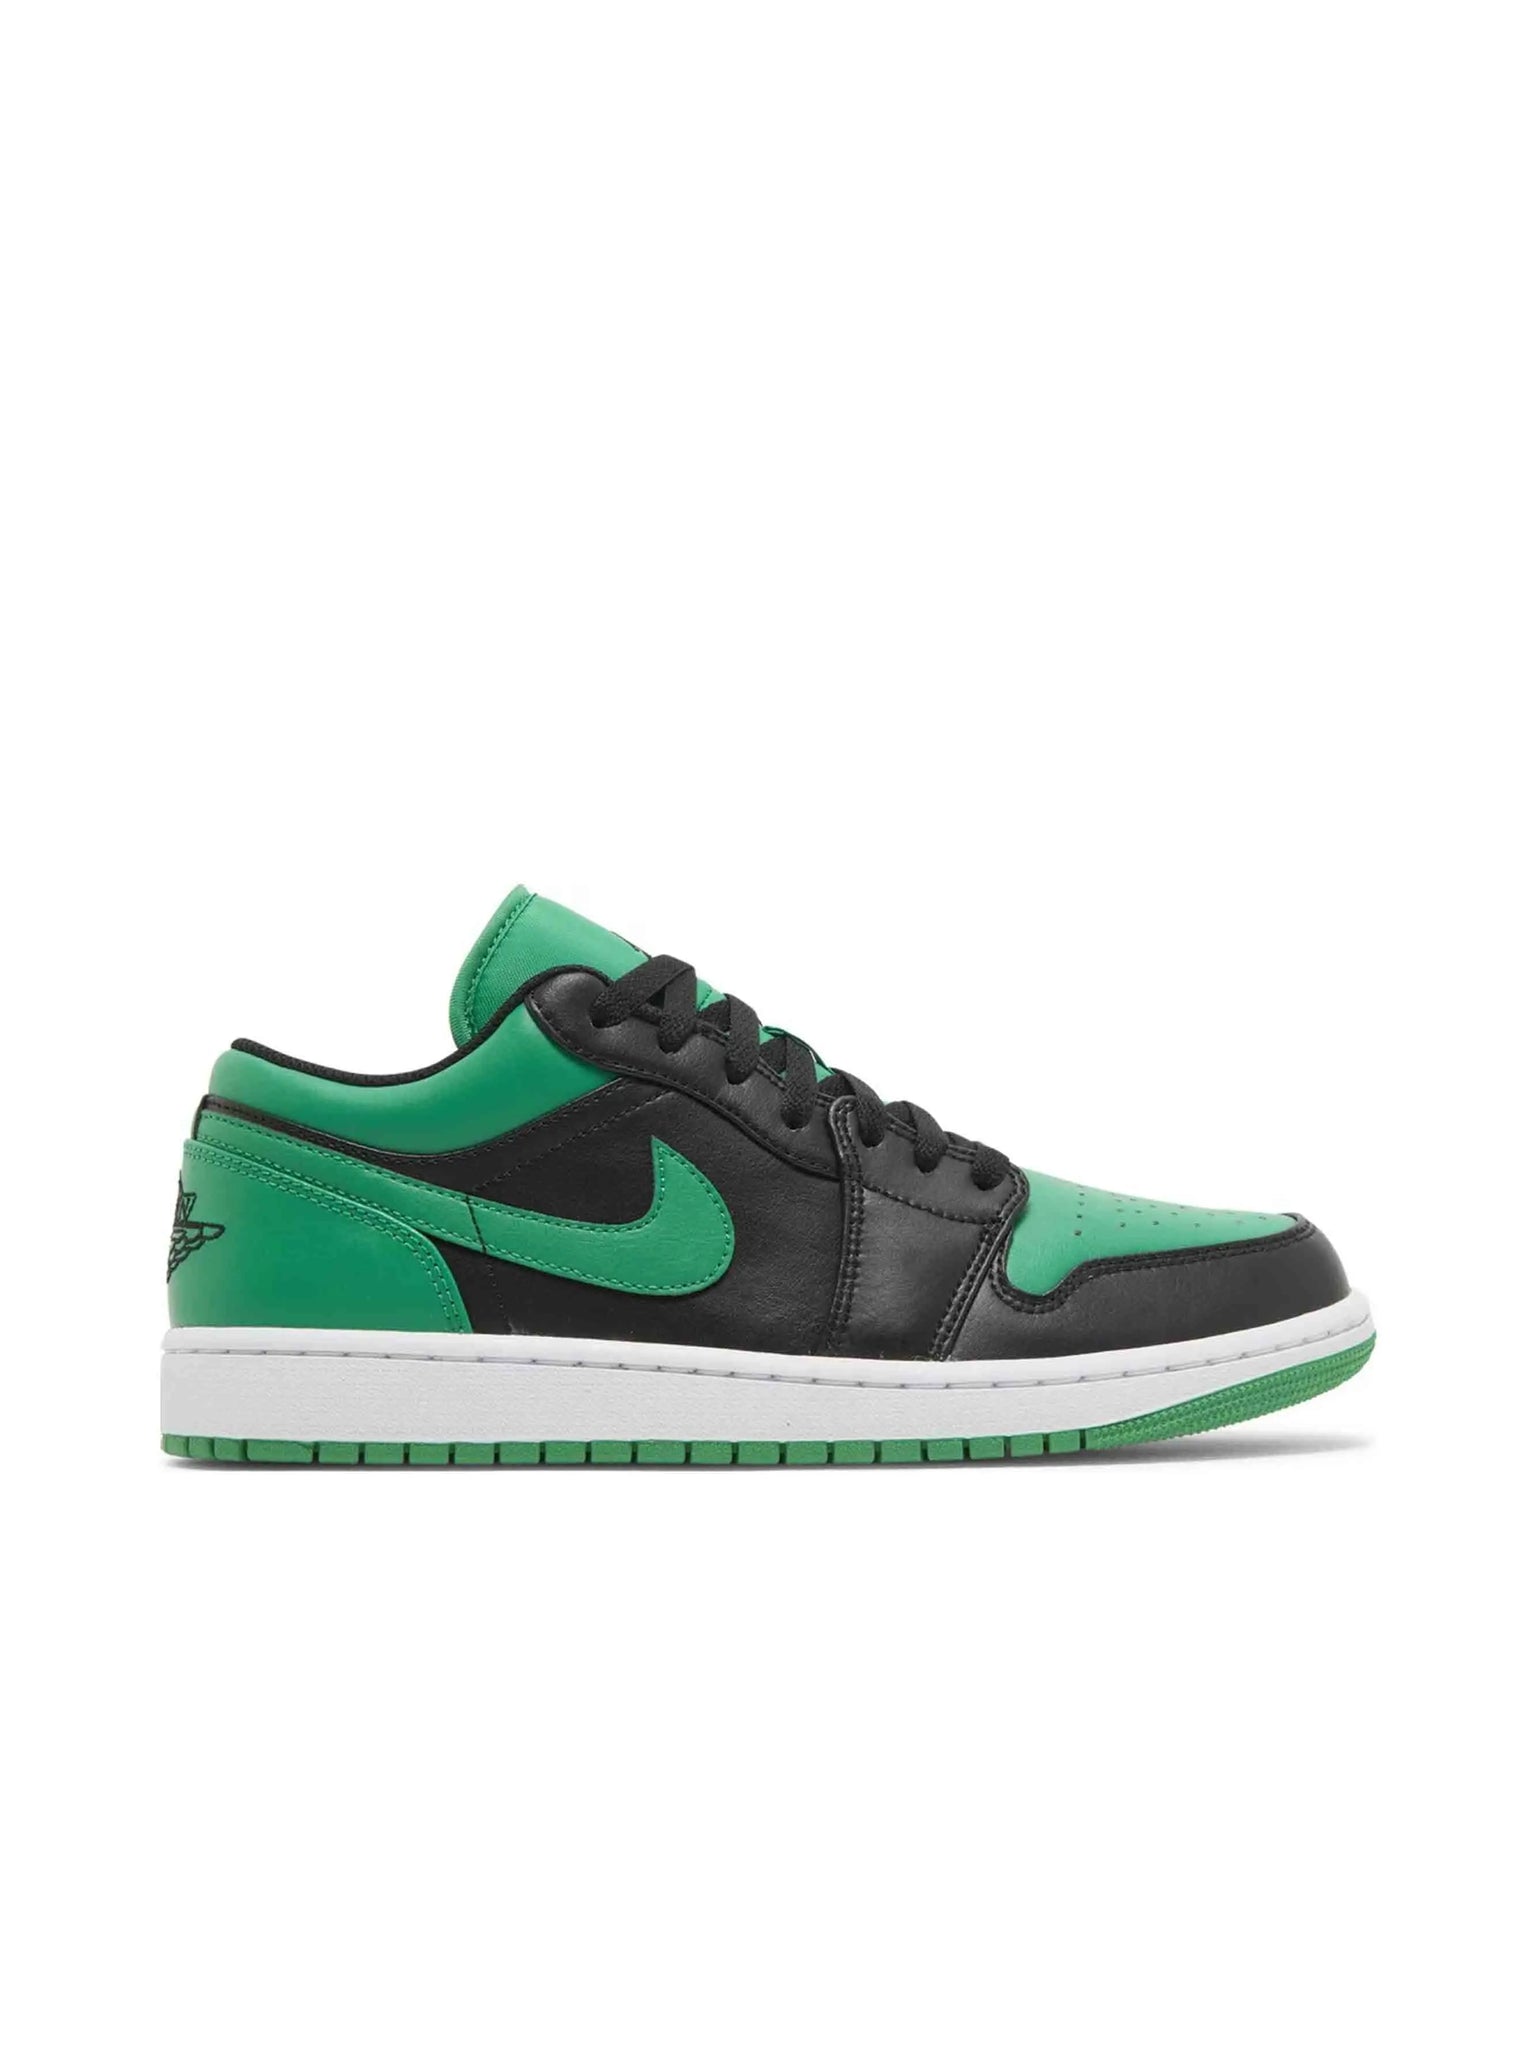 Nike Air Jordan 1 Low Lucky Green Prior